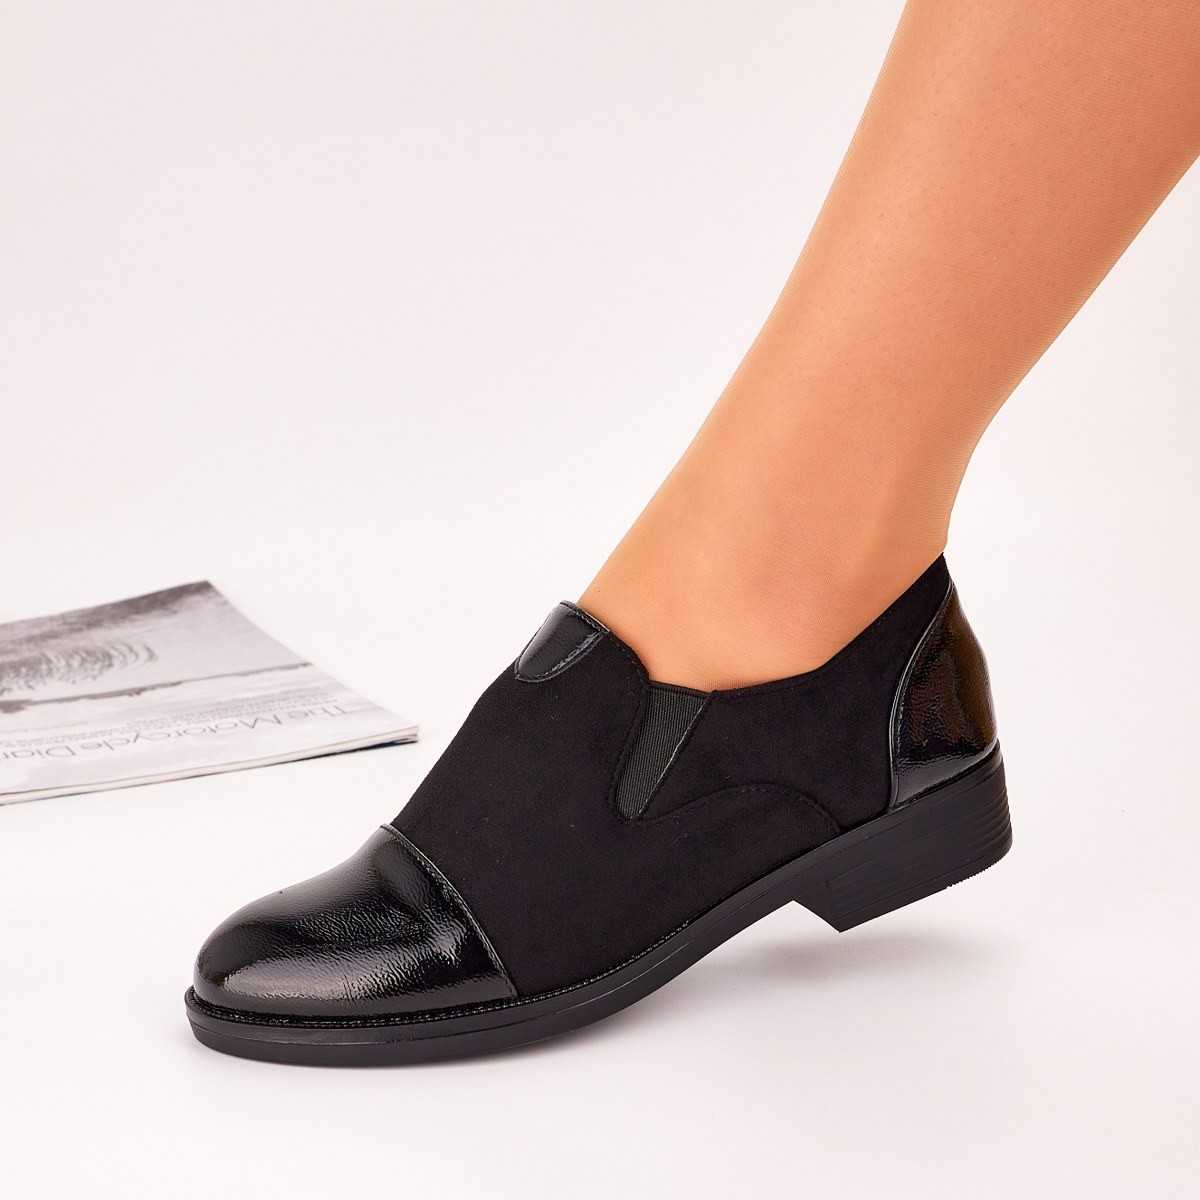 Pantofi Casual Dama Negri Cu Fermoar Fuka